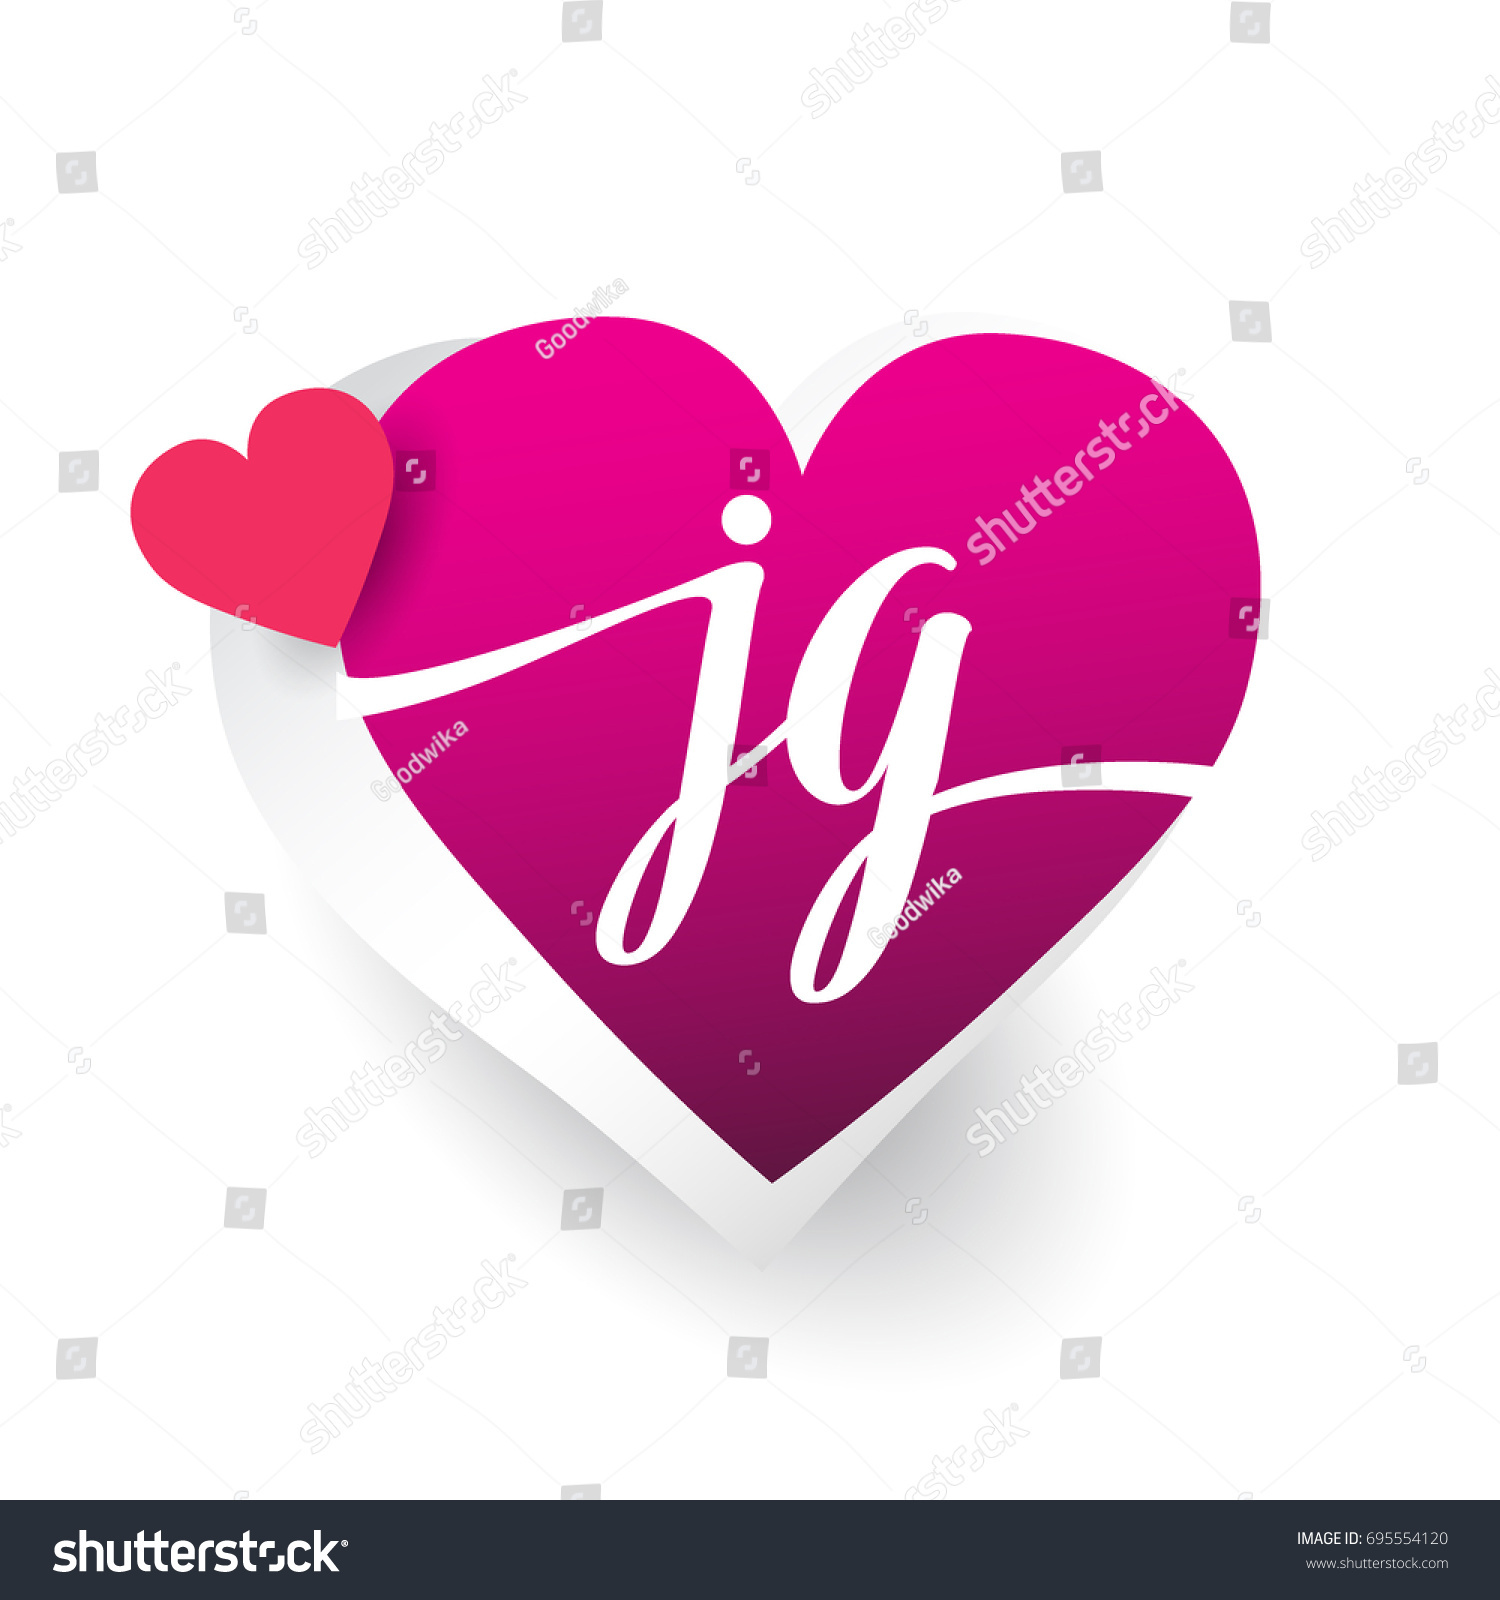 Initial Logo Letter Jg Heart Shape Stock Vector Royalty Free